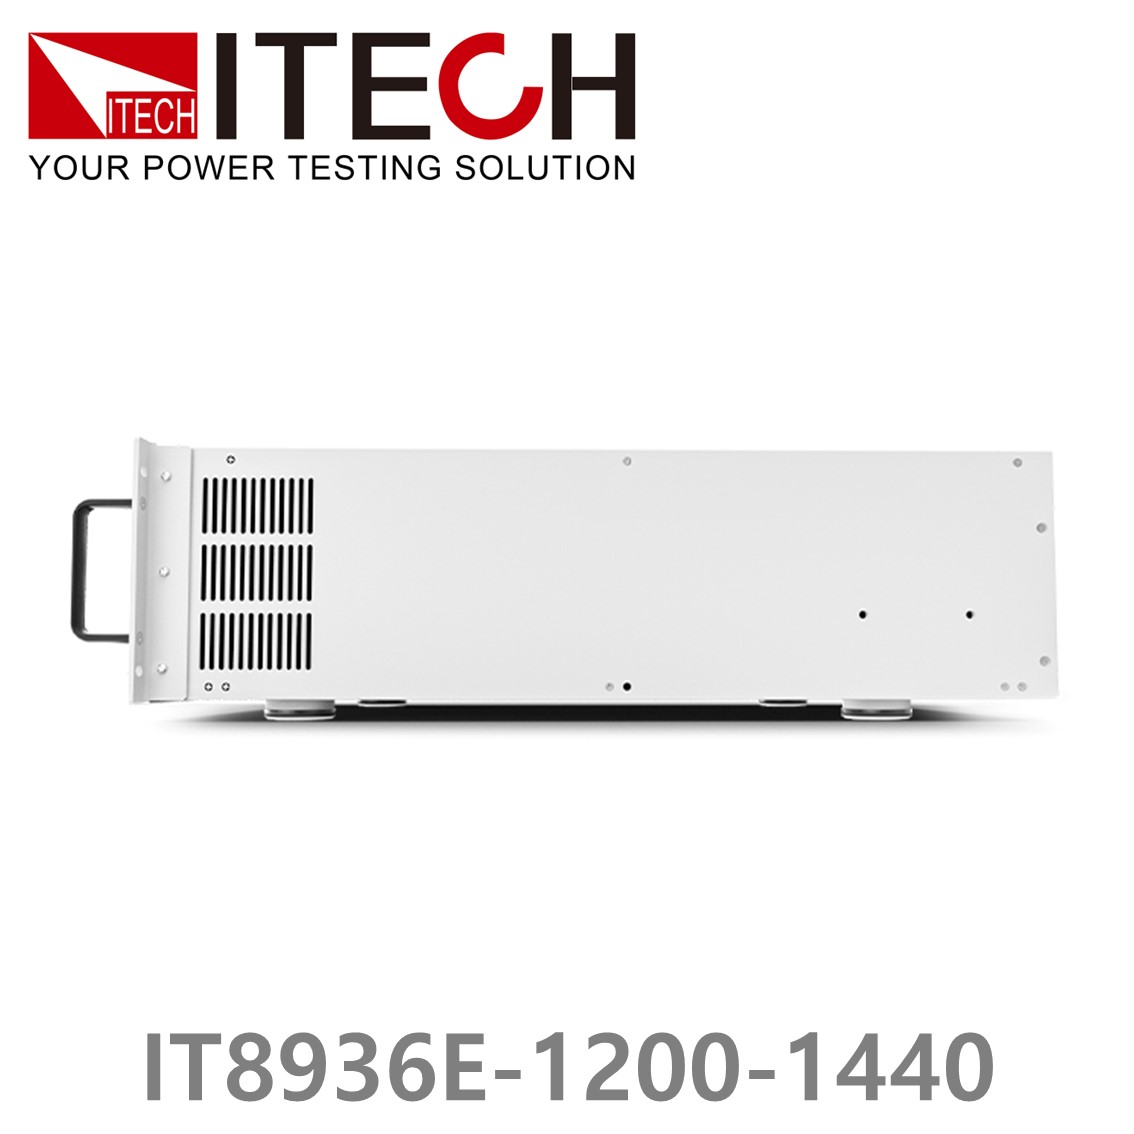 [ ITECH ] IT8936E-1200-1440  고성능 고전력 DC 전자로드 1200V/1440A/36kW (27U)